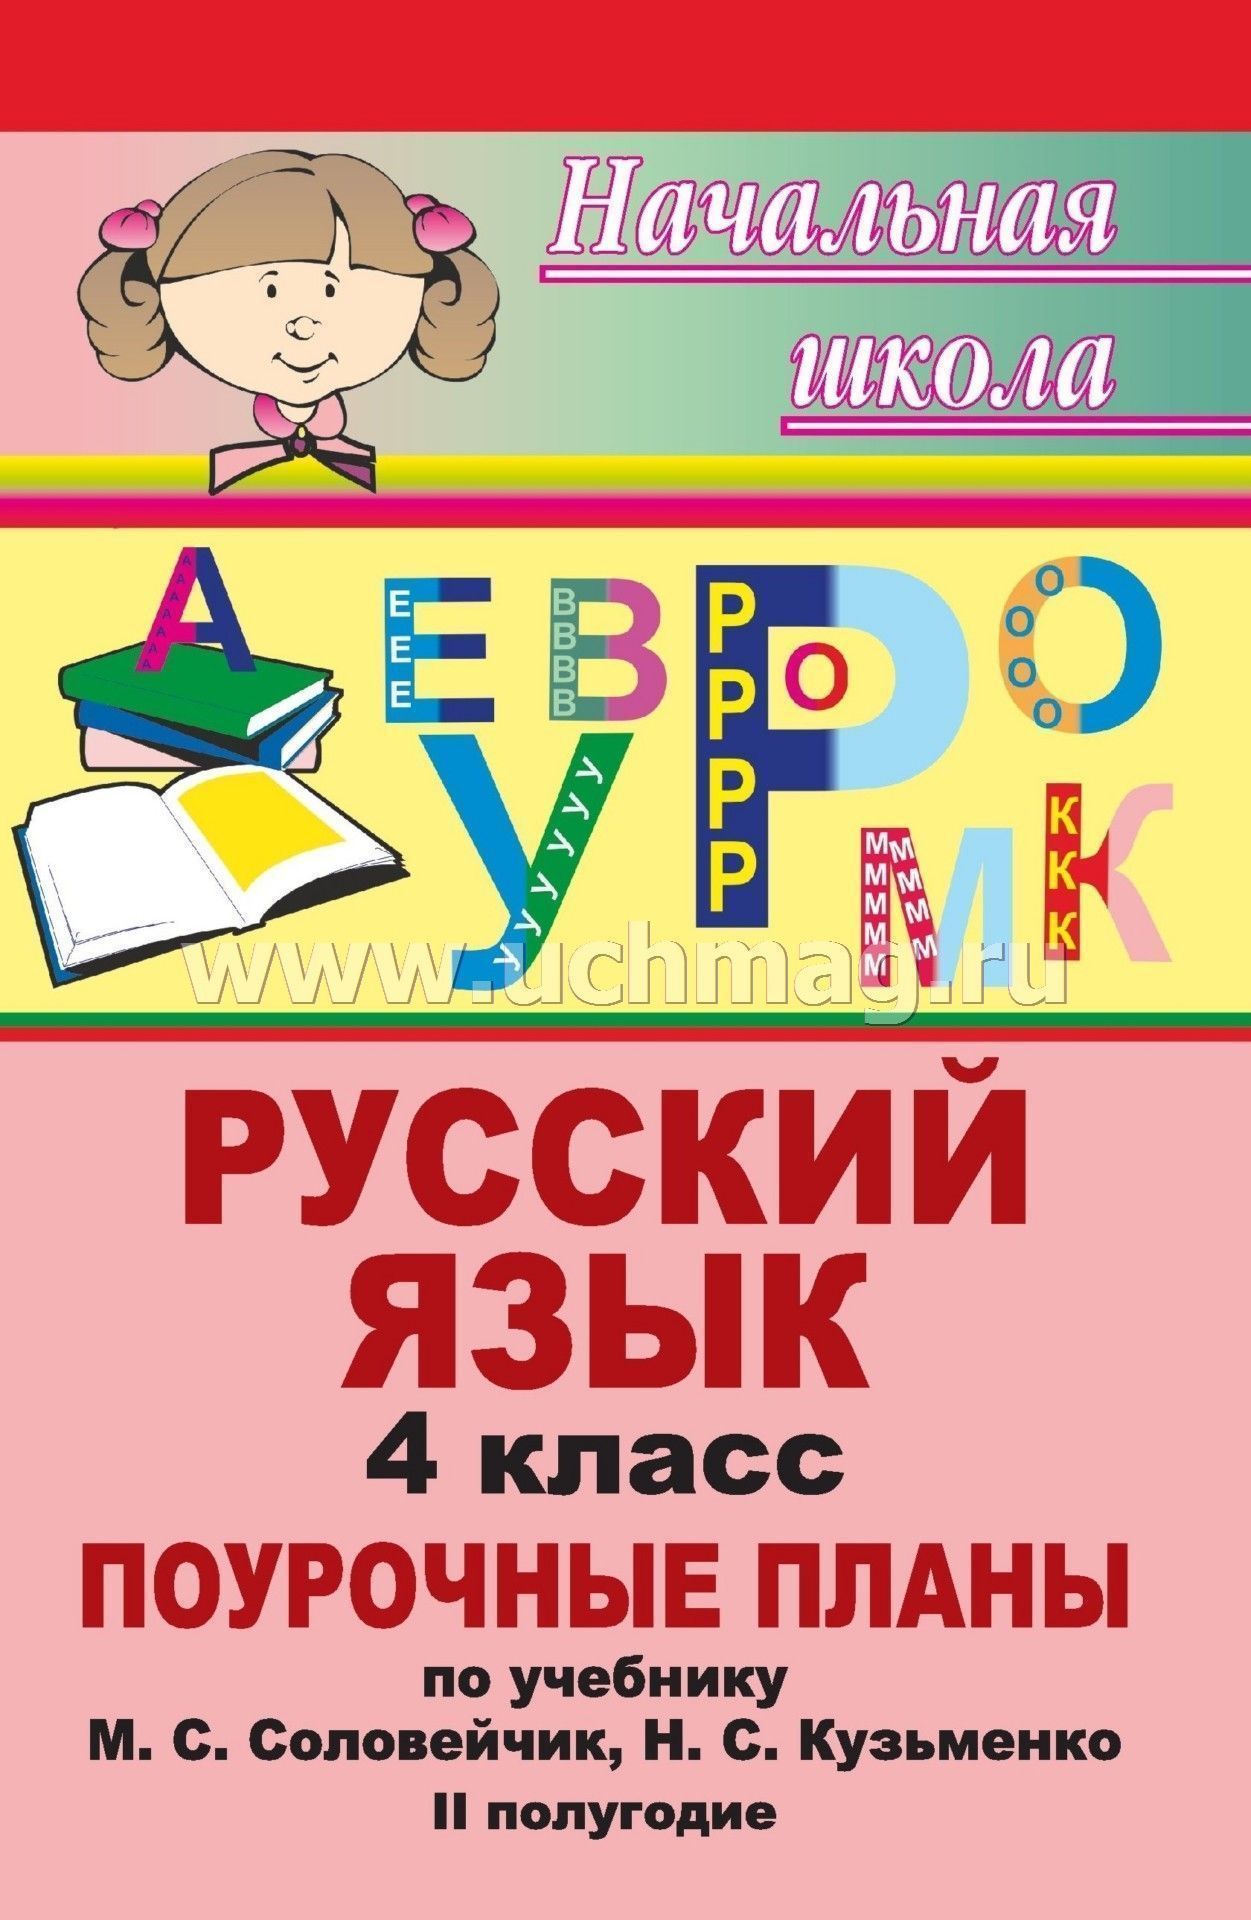 Скачать русский язык к тайнам нашего языка 4 класс учебник